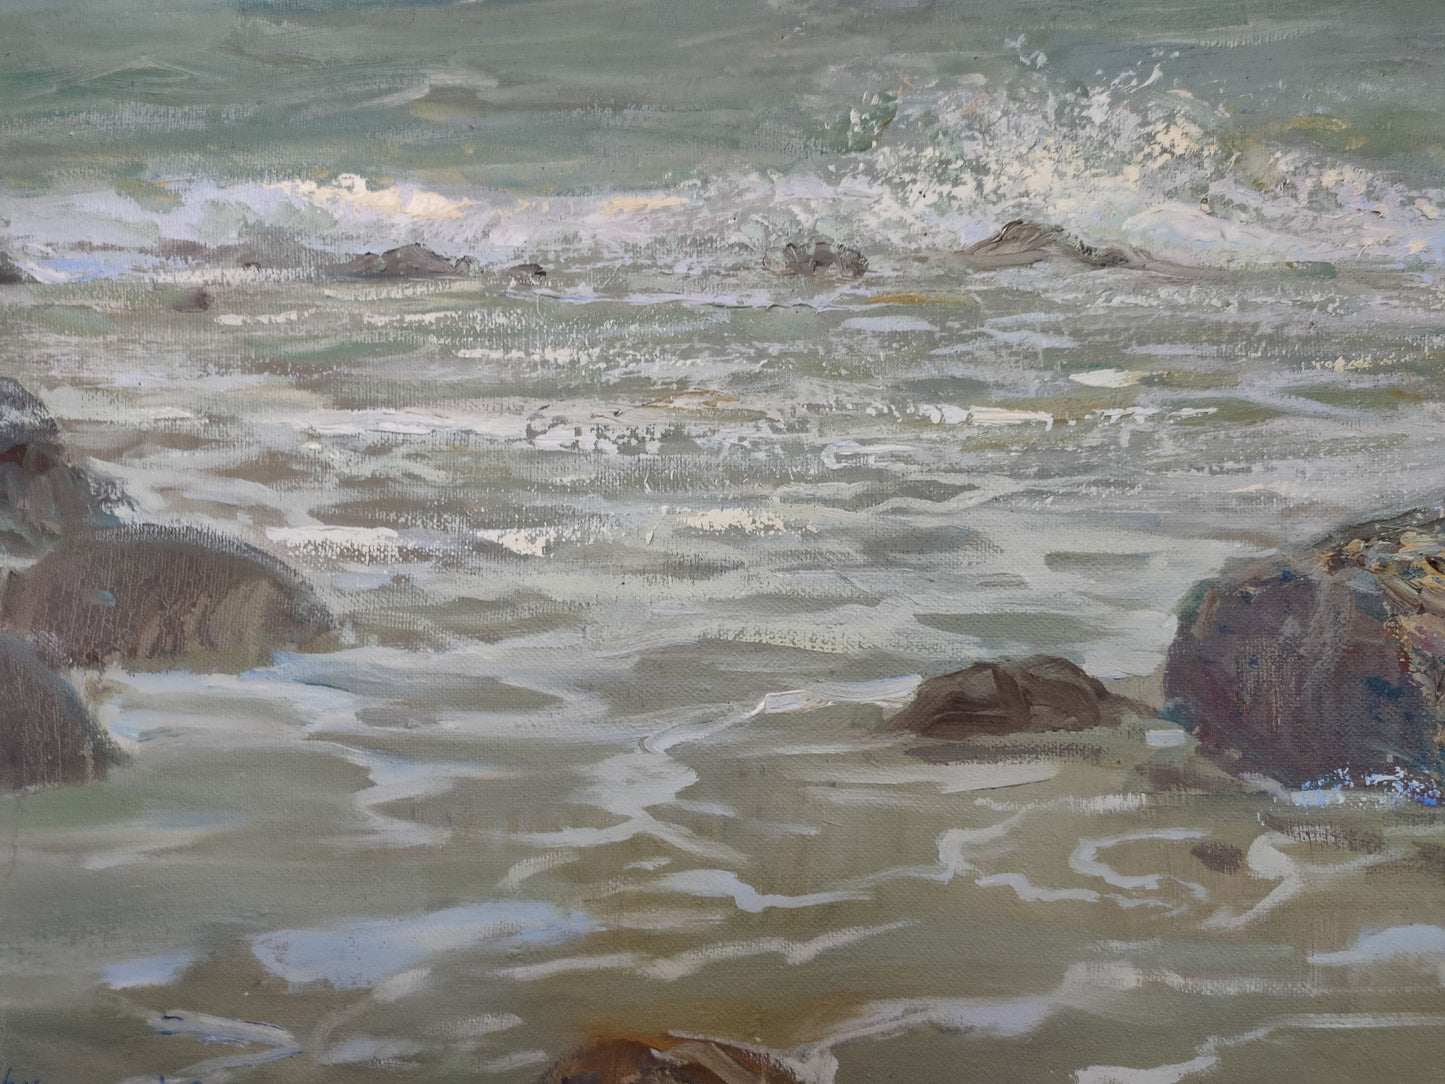 Mishurovsky V. V.'s Oil Art: The Azure Sea Shore